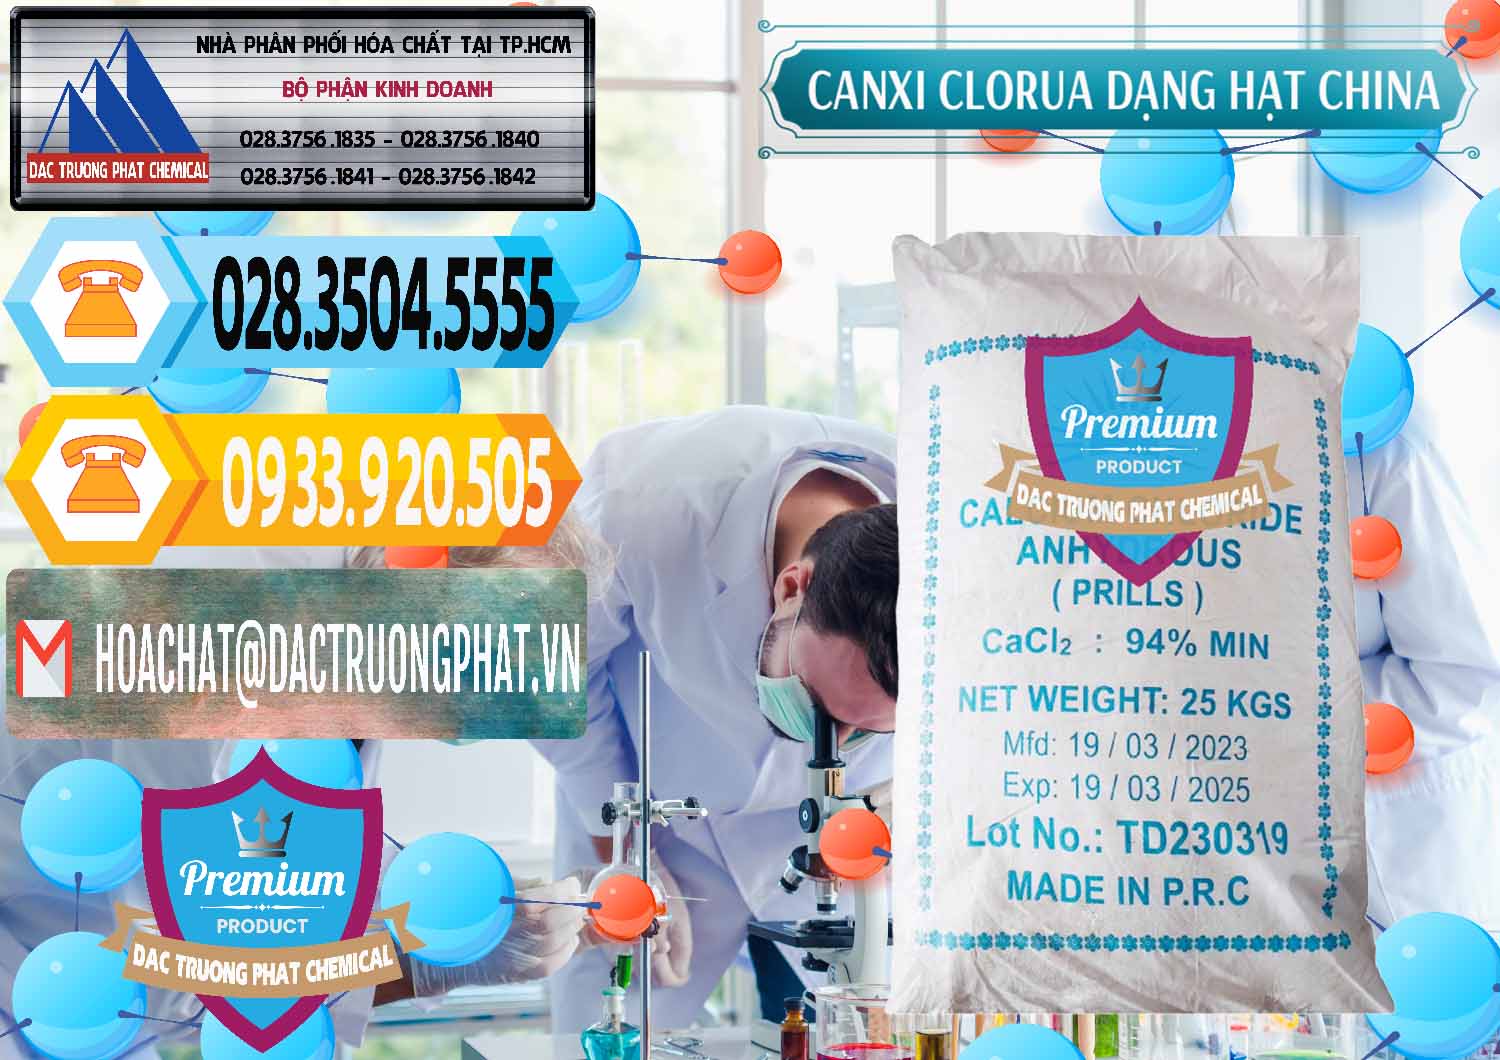 Cty chuyên kinh doanh & bán CaCl2 – Canxi Clorua 94% Dạng Hạt Trung Quốc China - 0373 - Chuyên kinh doanh - cung cấp hóa chất tại TP.HCM - hoachattayrua.net